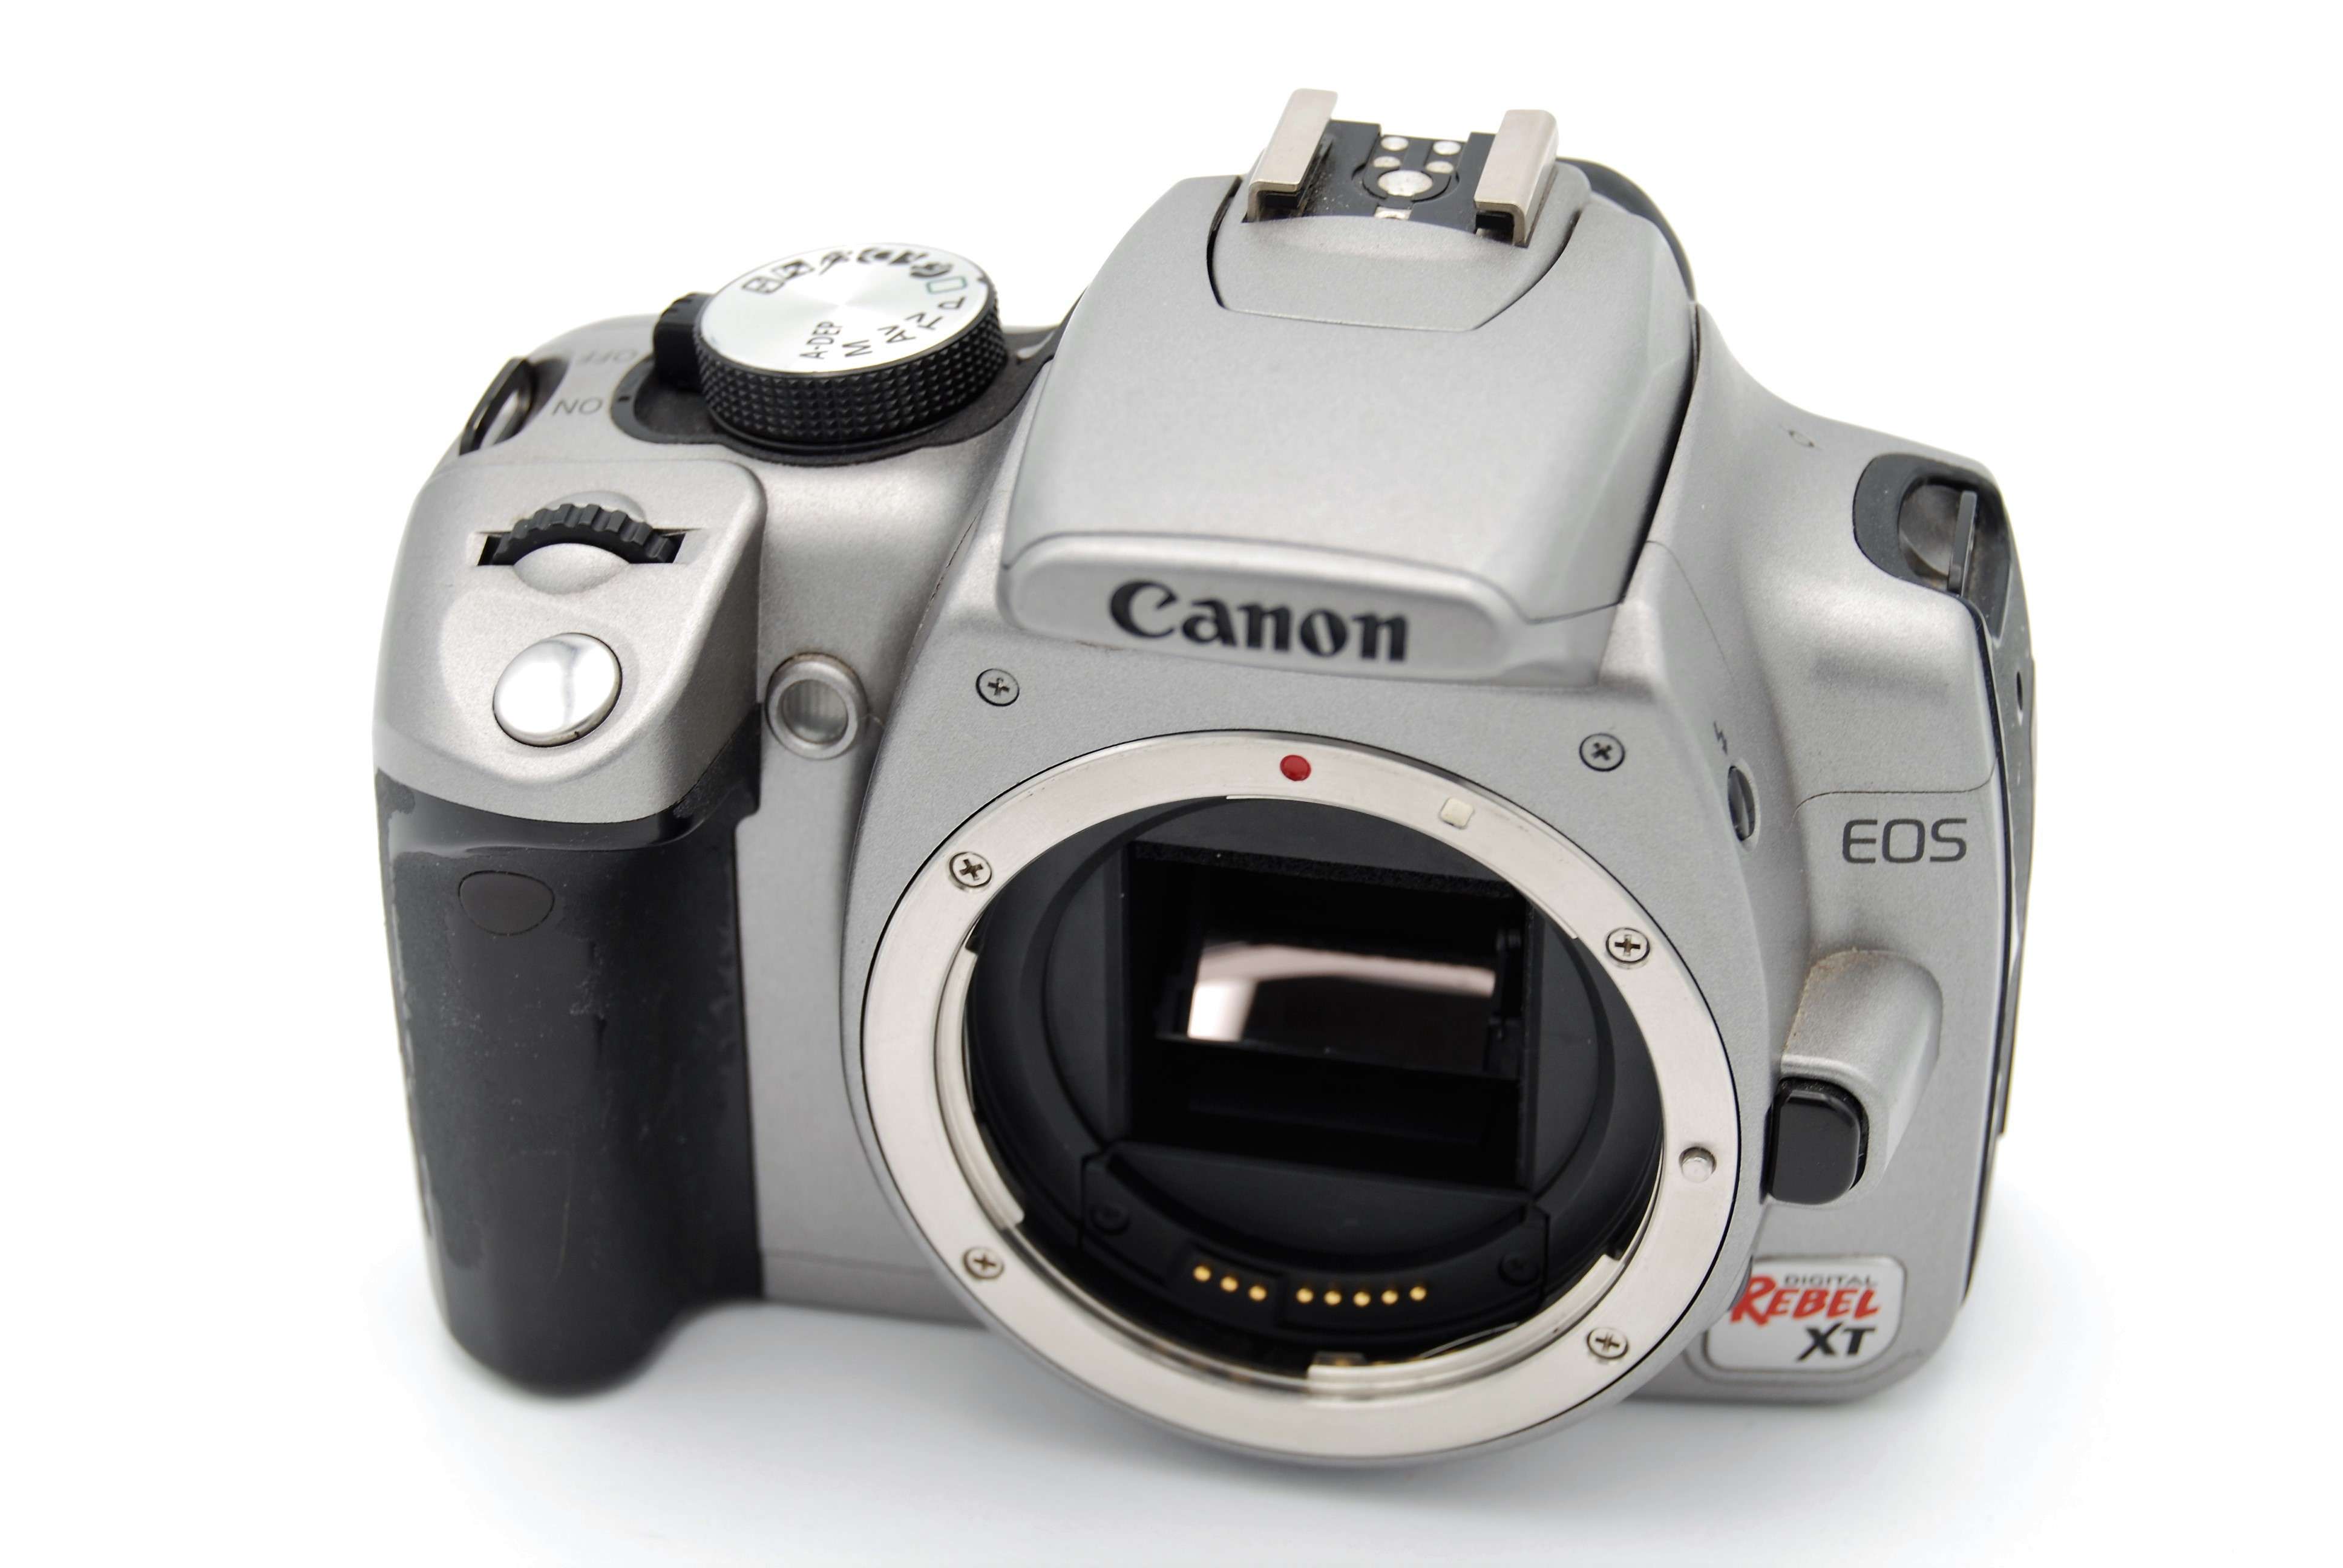 Canon eos 350d. Canon Rebel XT. Фотоаппарат Canon EOS Rebel XT. Canon EOS 350d selfie.